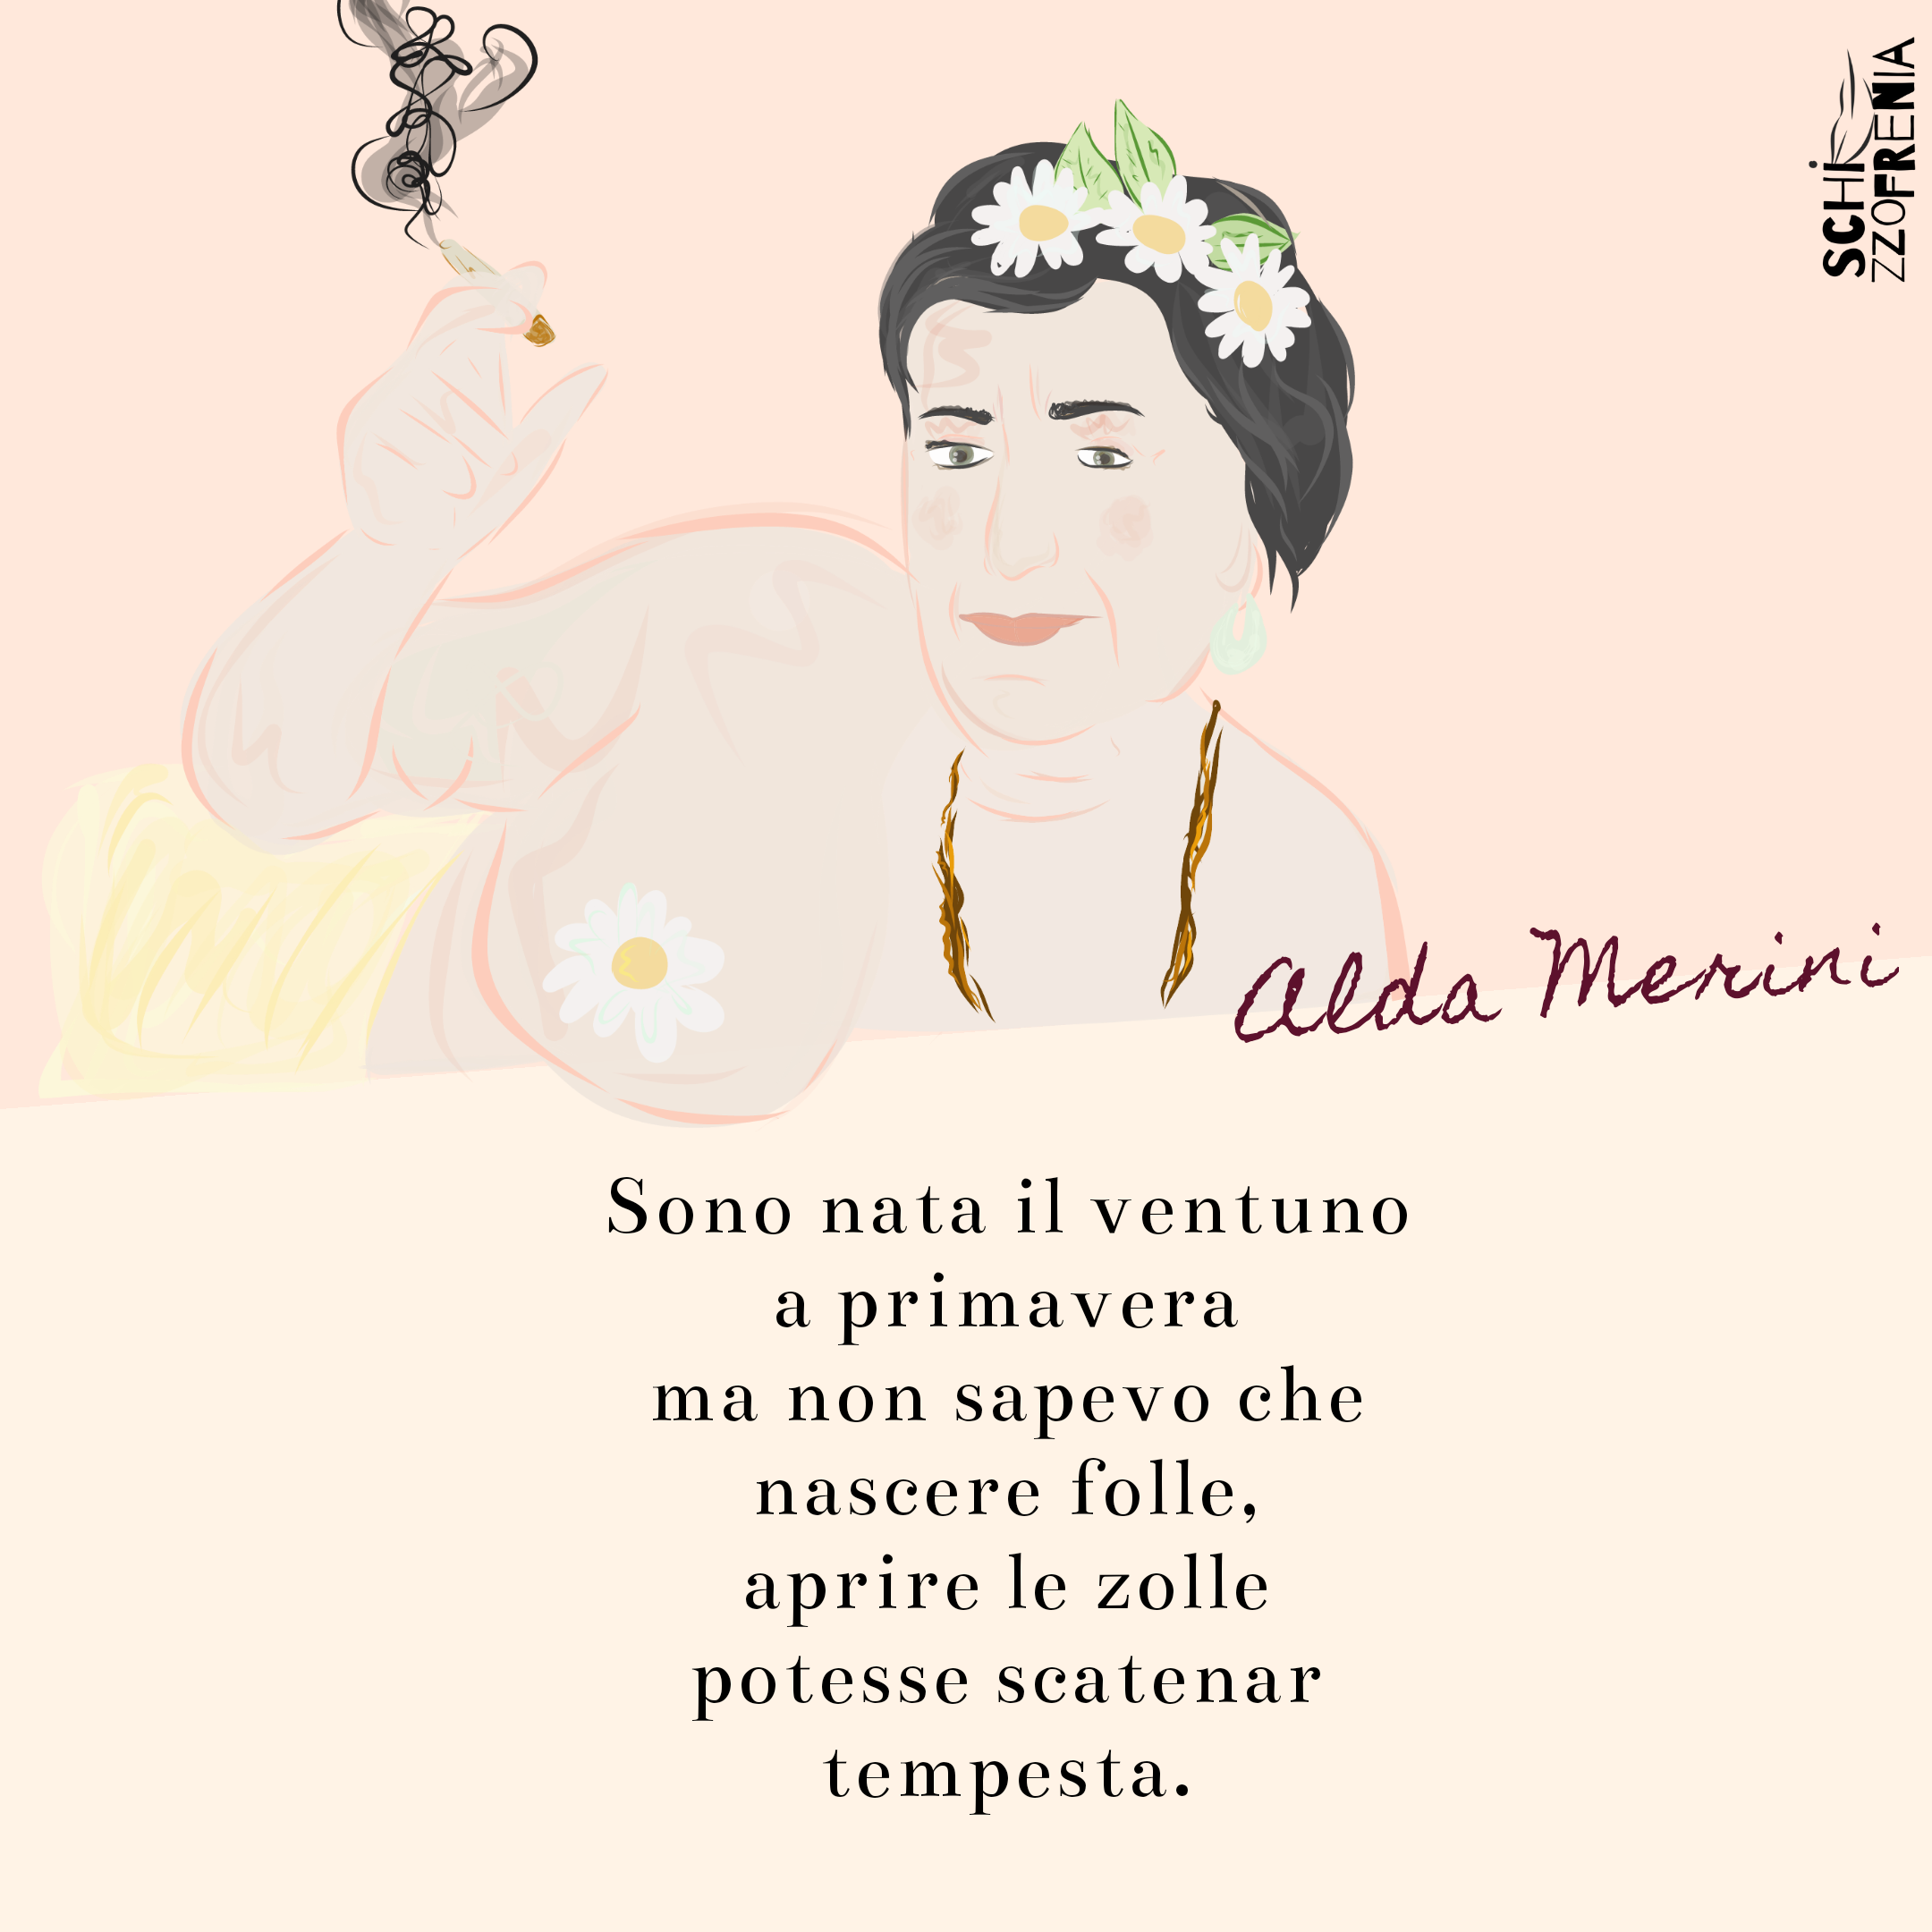 Sono nata il 21 a primavera, il ricordo di Alda Merini nella Giornata  della poesia - Capocronaca